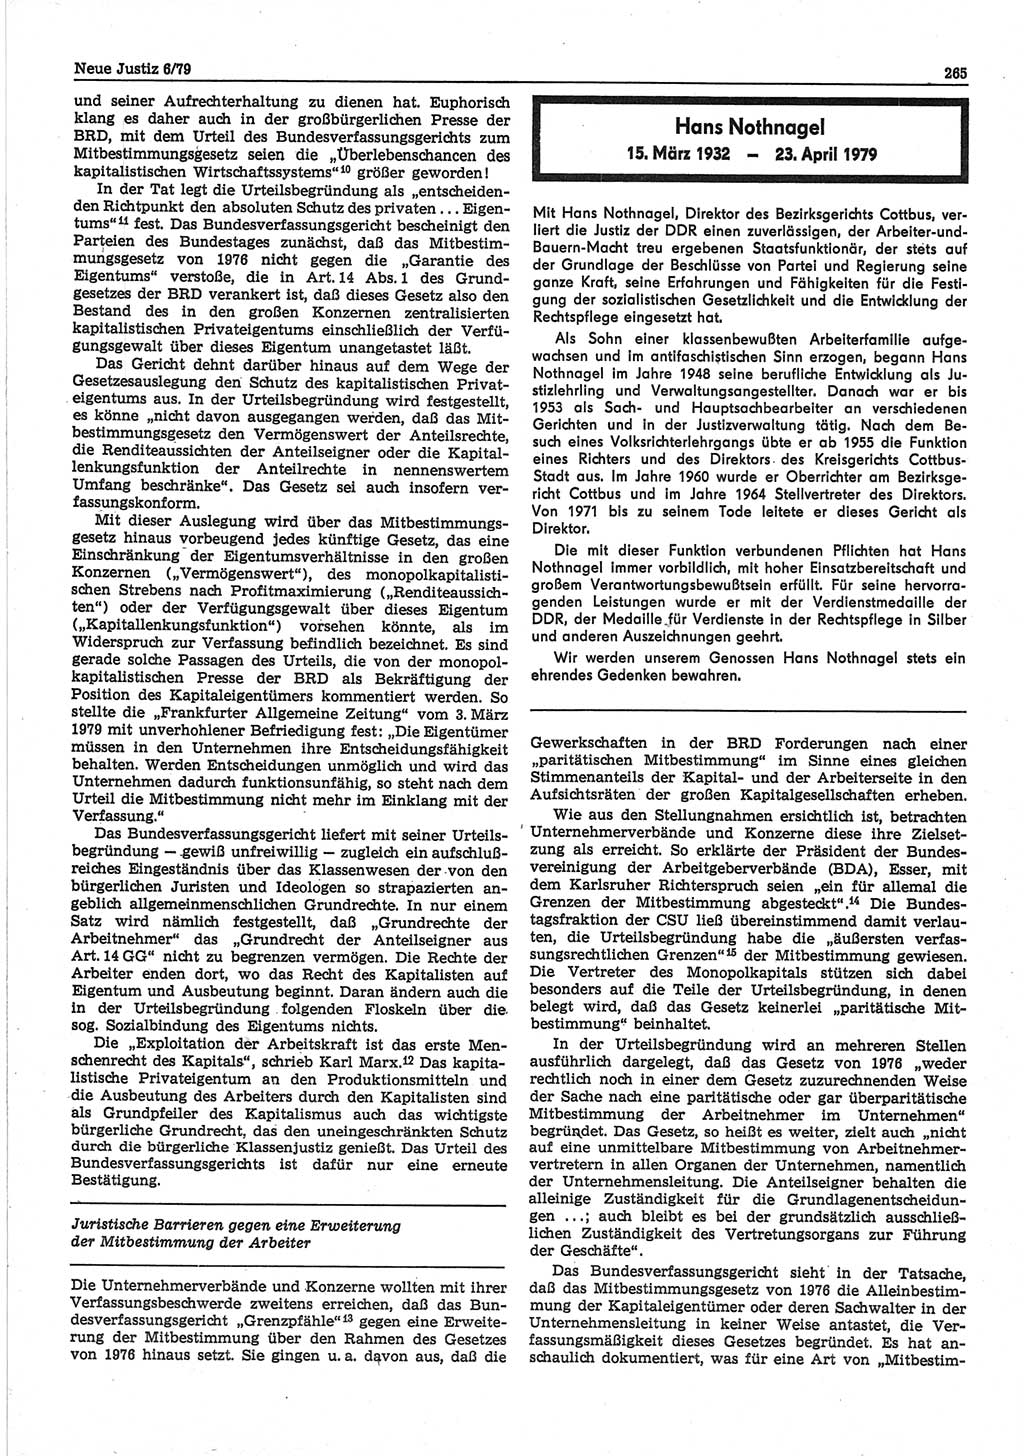 Neue Justiz (NJ), Zeitschrift für sozialistisches Recht und Gesetzlichkeit [Deutsche Demokratische Republik (DDR)], 33. Jahrgang 1979, Seite 265 (NJ DDR 1979, S. 265)